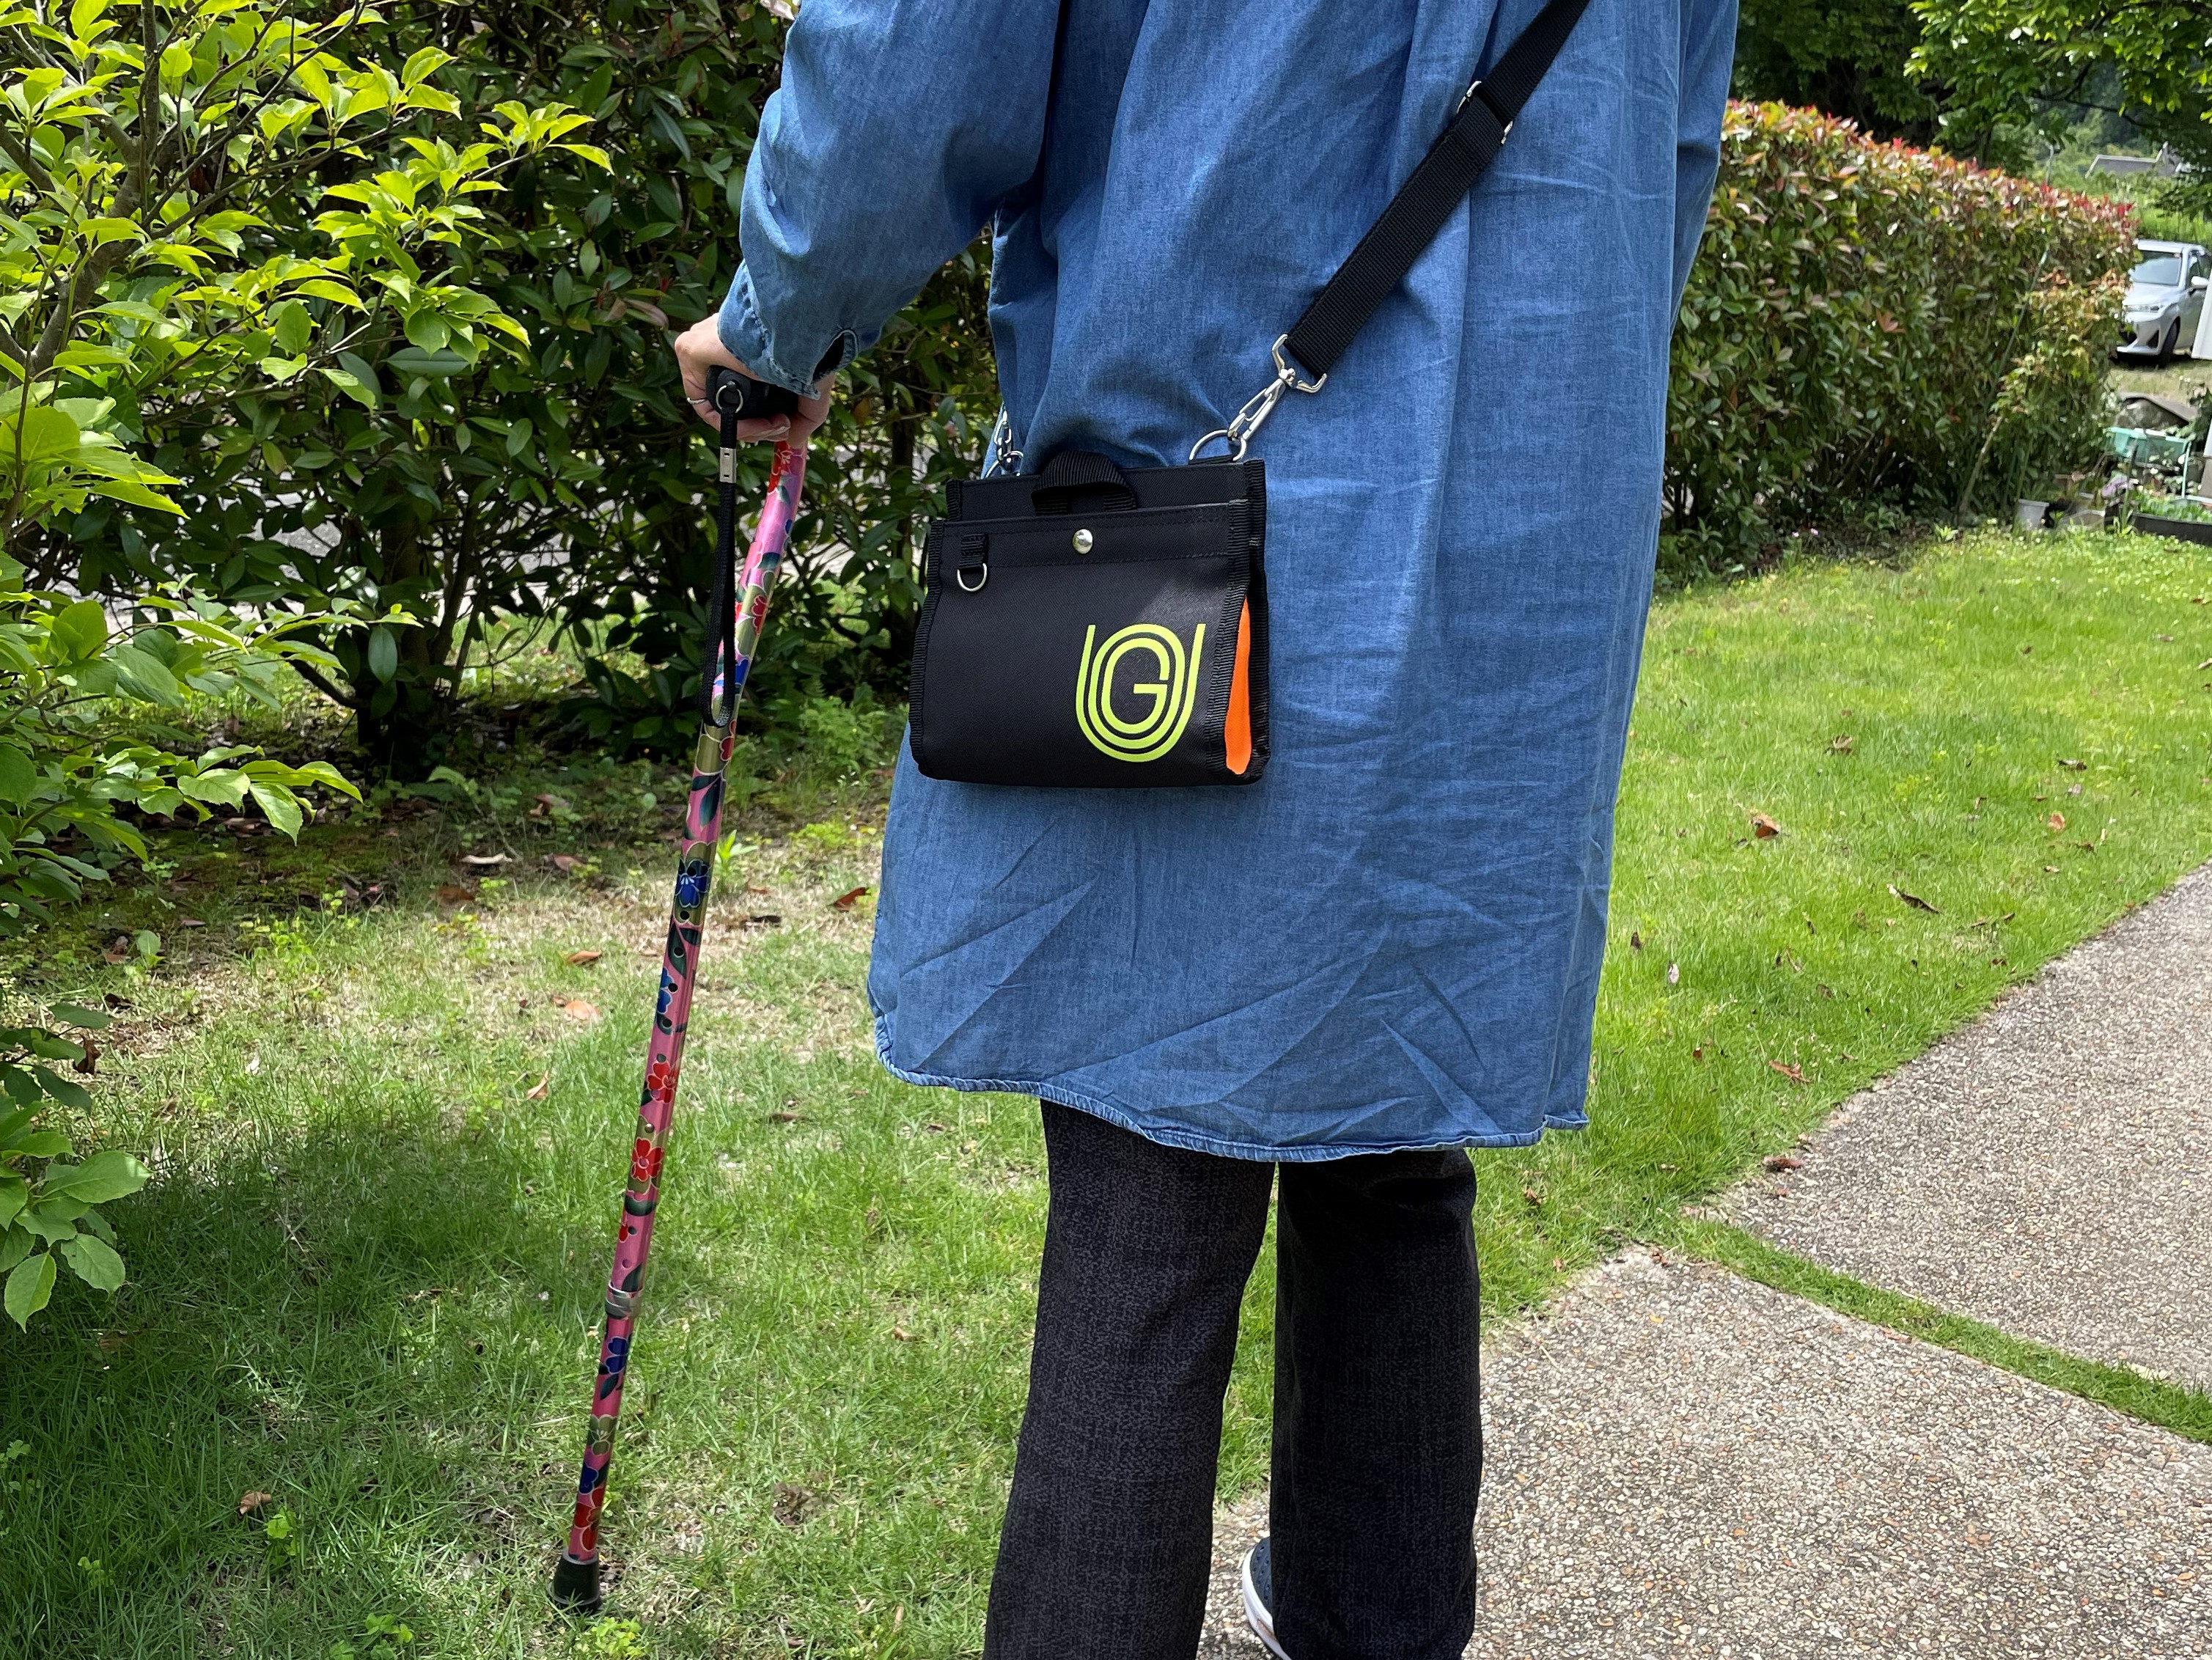 片麻痺で介護が必要な方でも使いやすいユニバーサルデザインバッグ U-GO[smart]